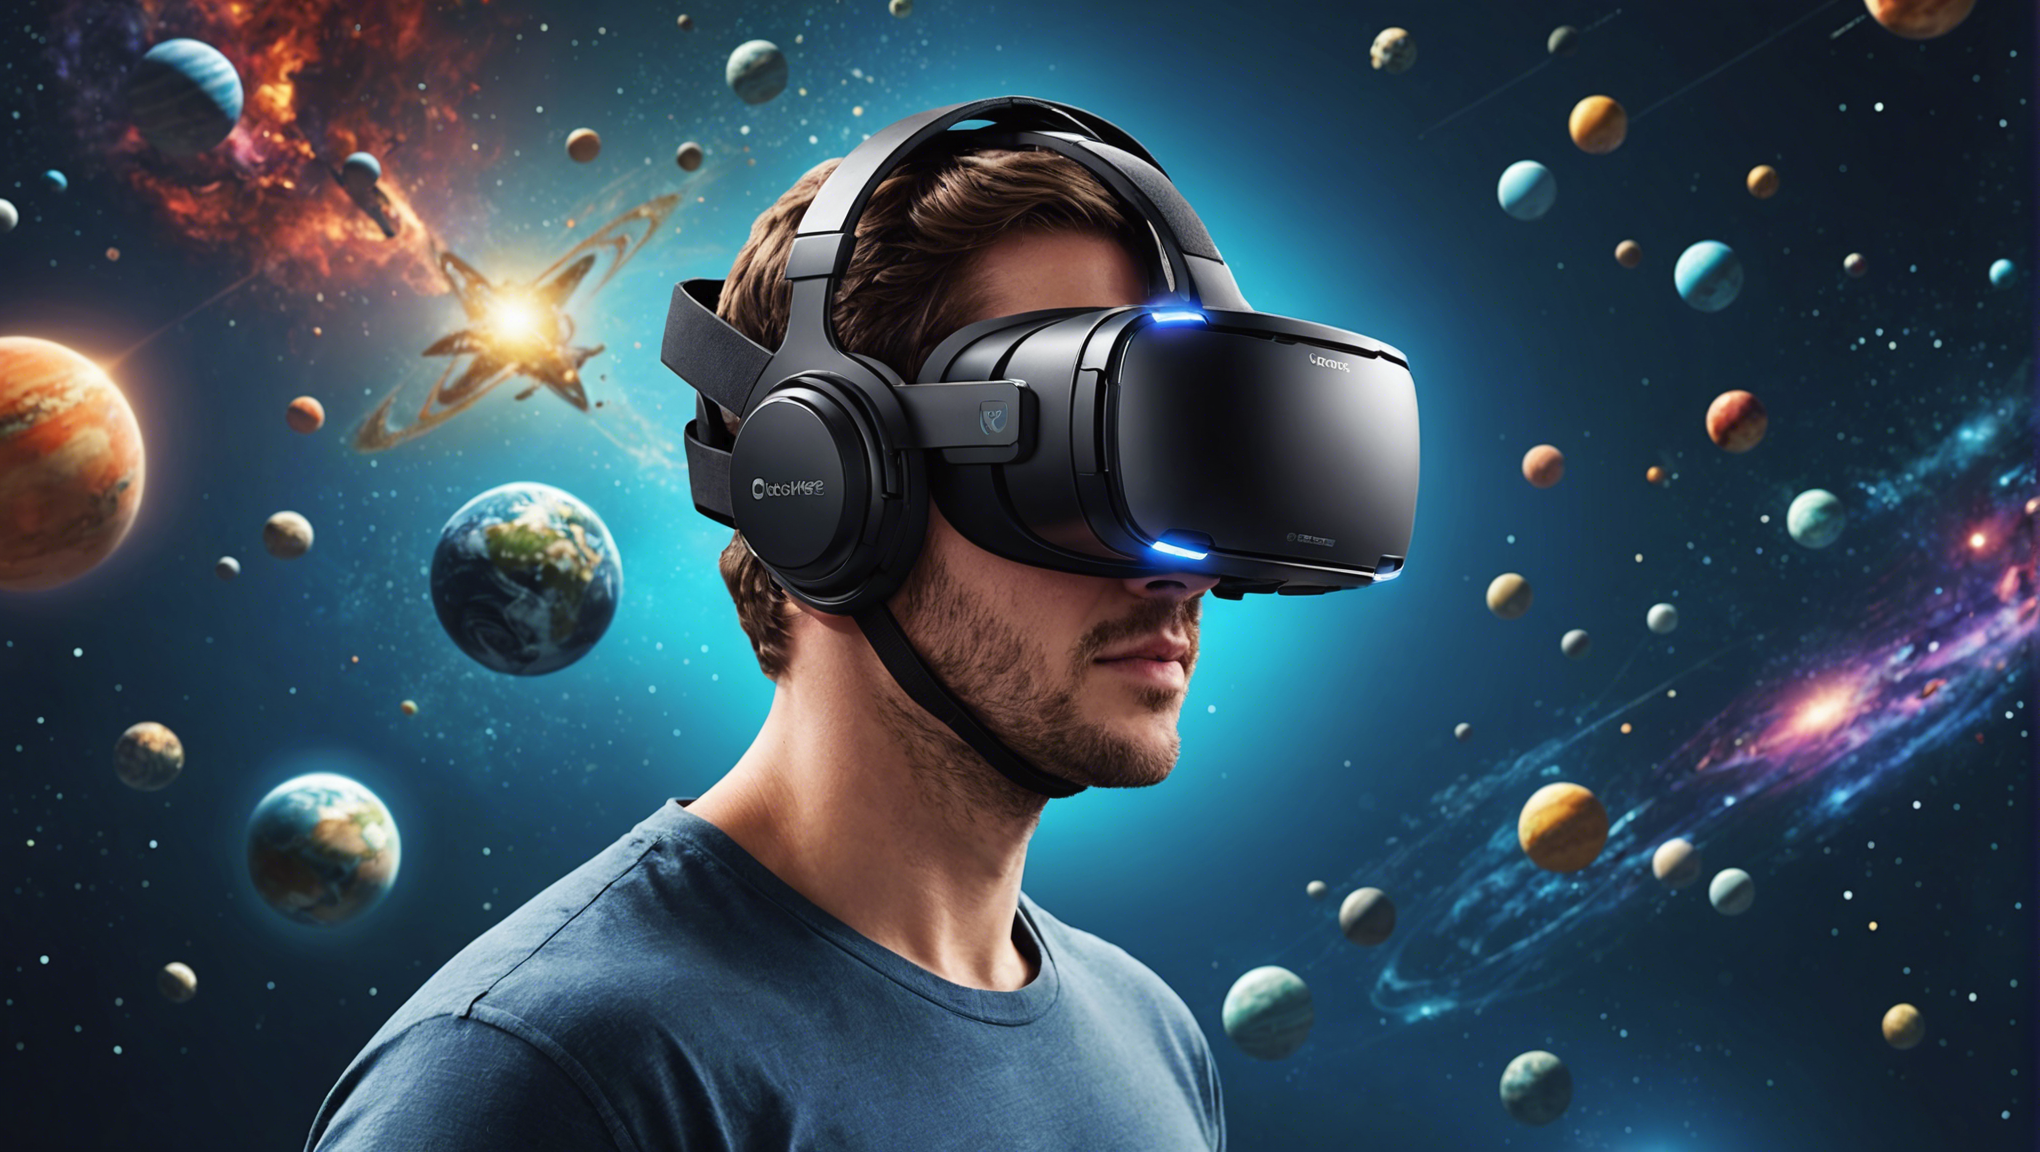 découvrez le casque vr : plongez dans un univers virtuel réaliste ! plongez au cœur de l'action avec le casque de réalité virtuelle et vivez des expériences immersives inédites.